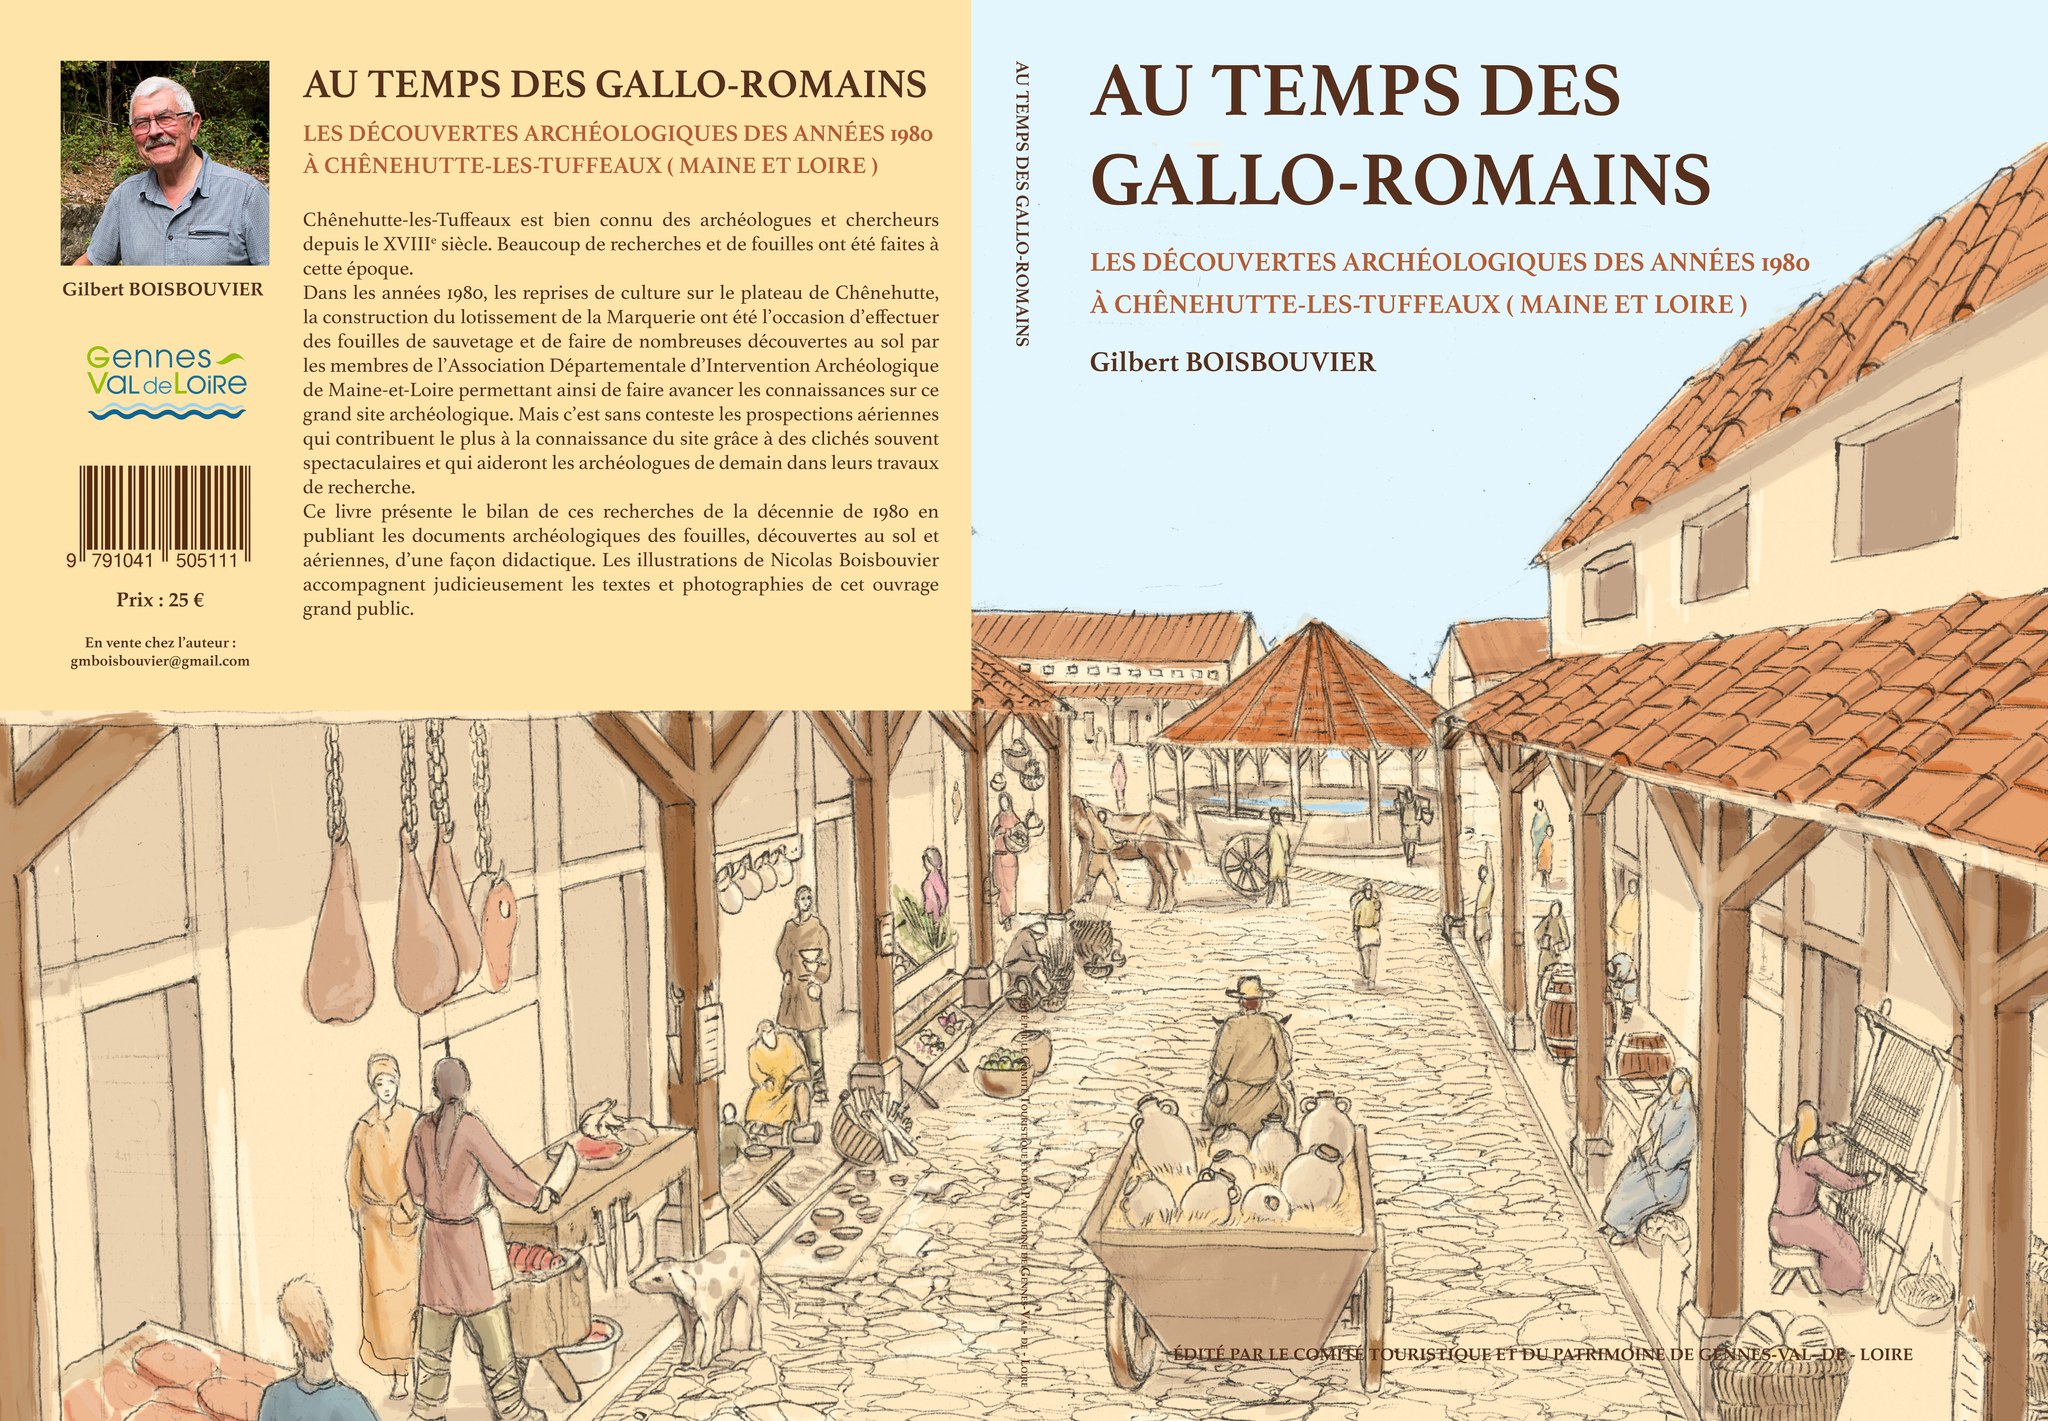 Au temps des Gallo-romains : Conférence de Gilbert Boisbouvier 